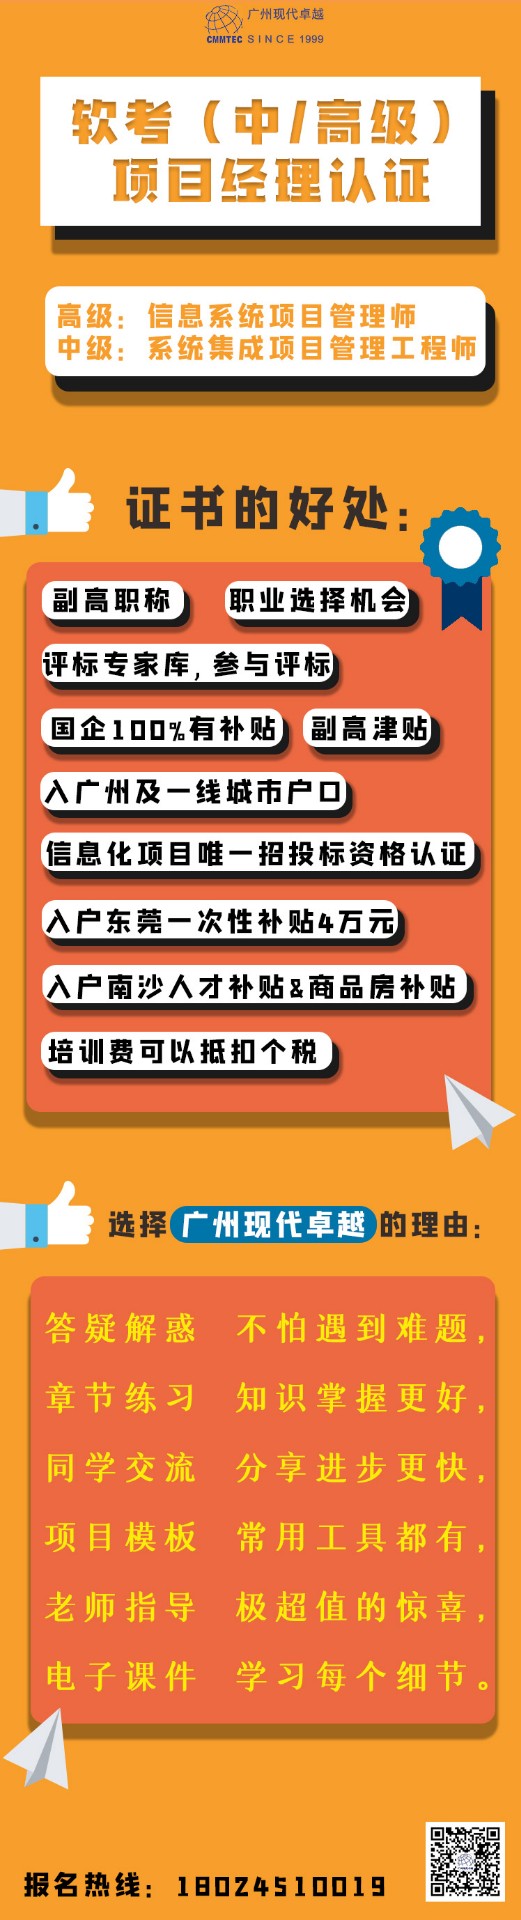 广东软考报名 ▎2022年下半年报名时间为8月17日